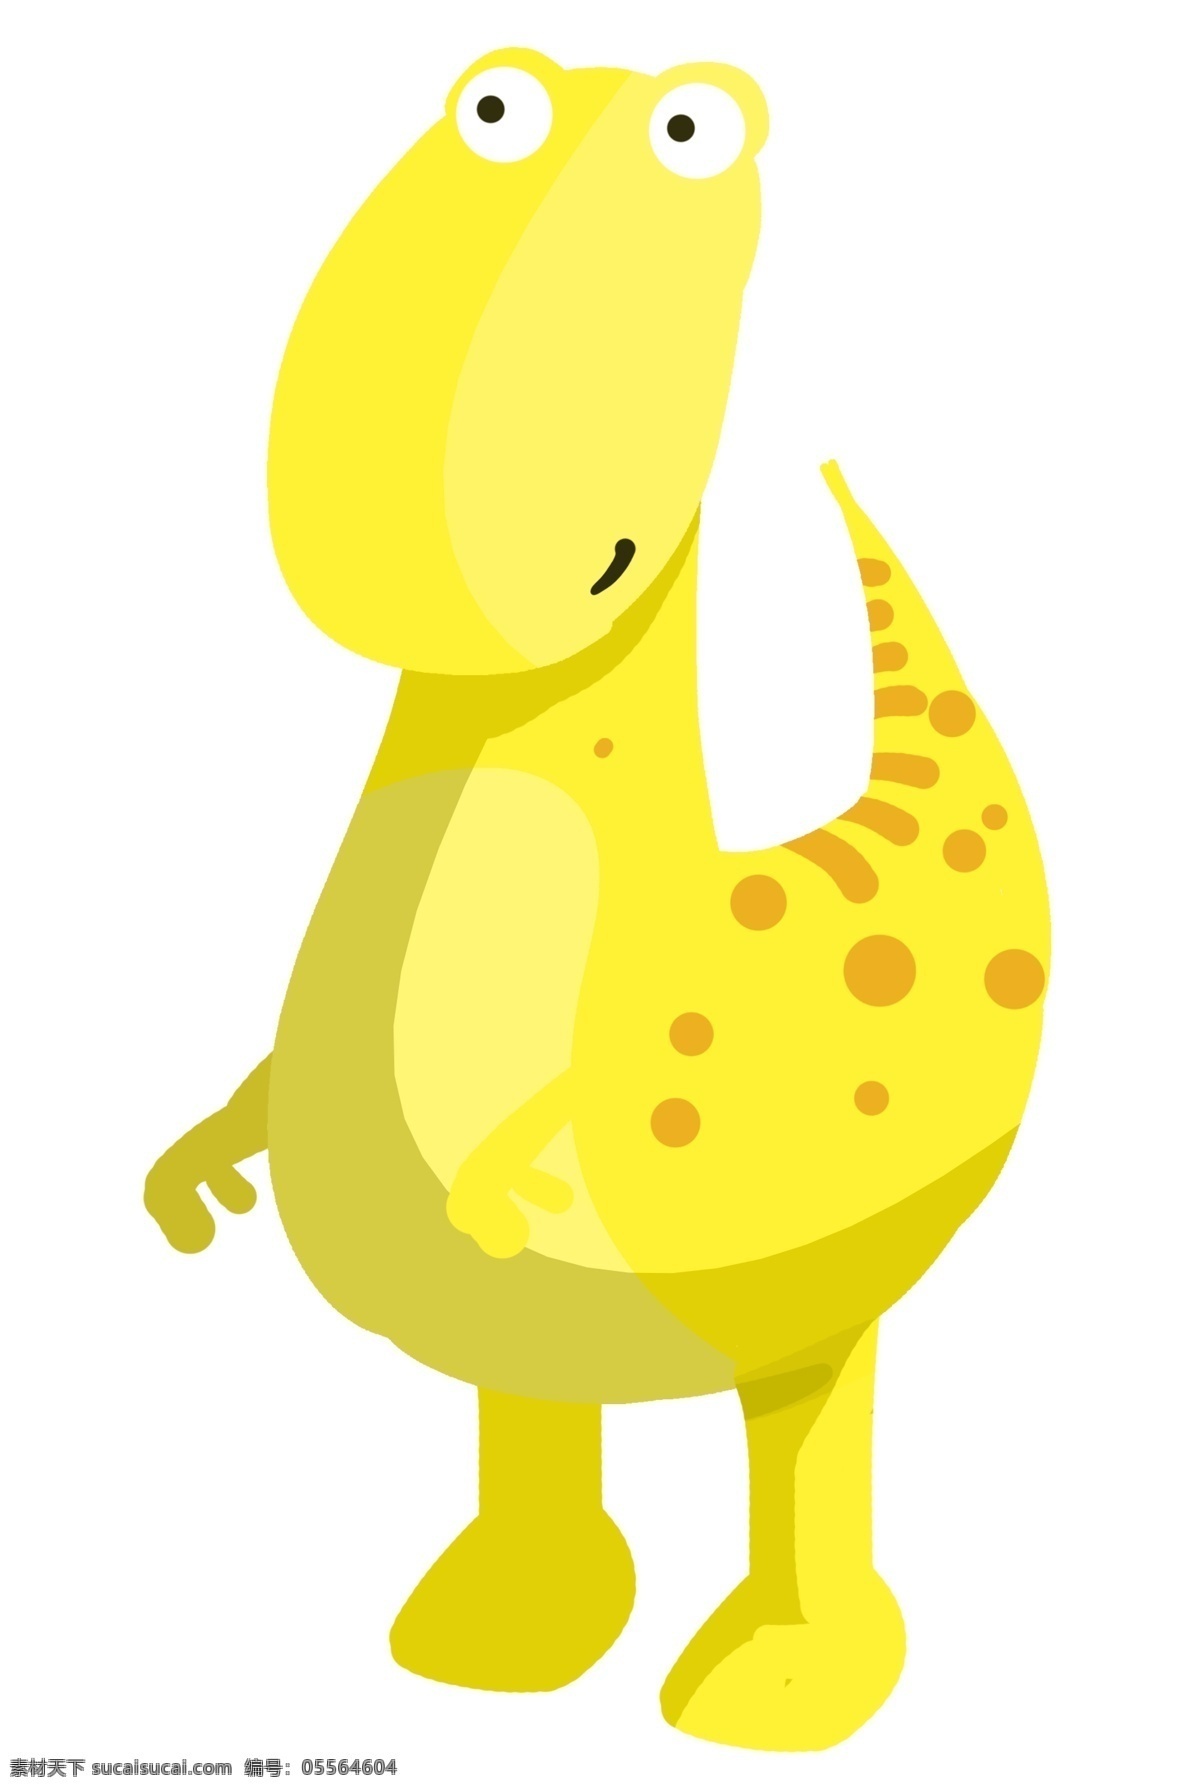 黄色 动物 恐龙 插画 黄色的恐龙 卡通插画 动物插画 恐龙插画 白垩纪恐龙 活泼的恐龙 可爱的恐龙